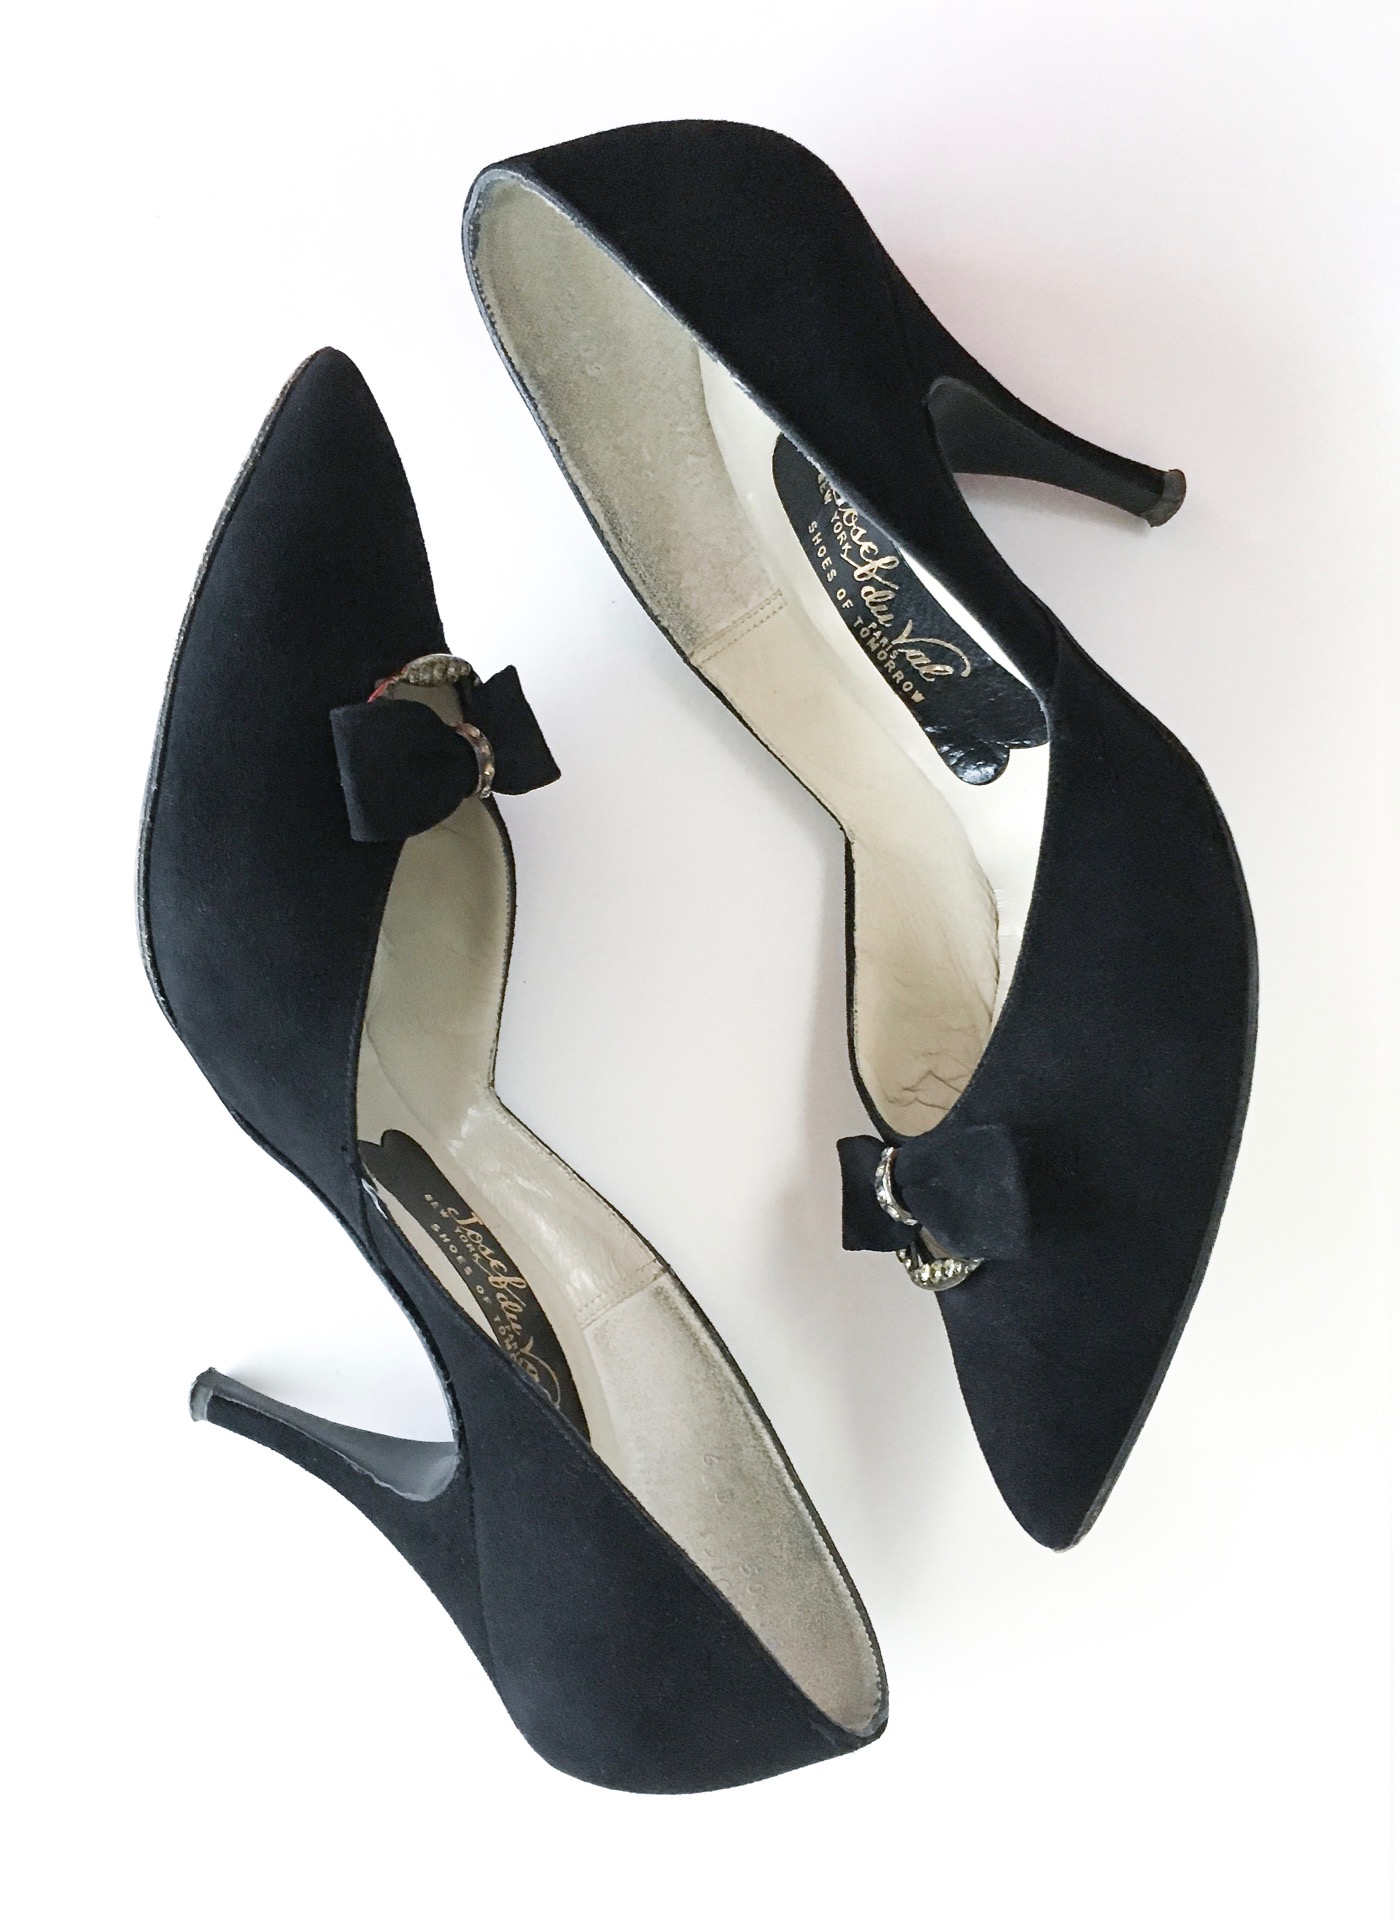 60s high heels